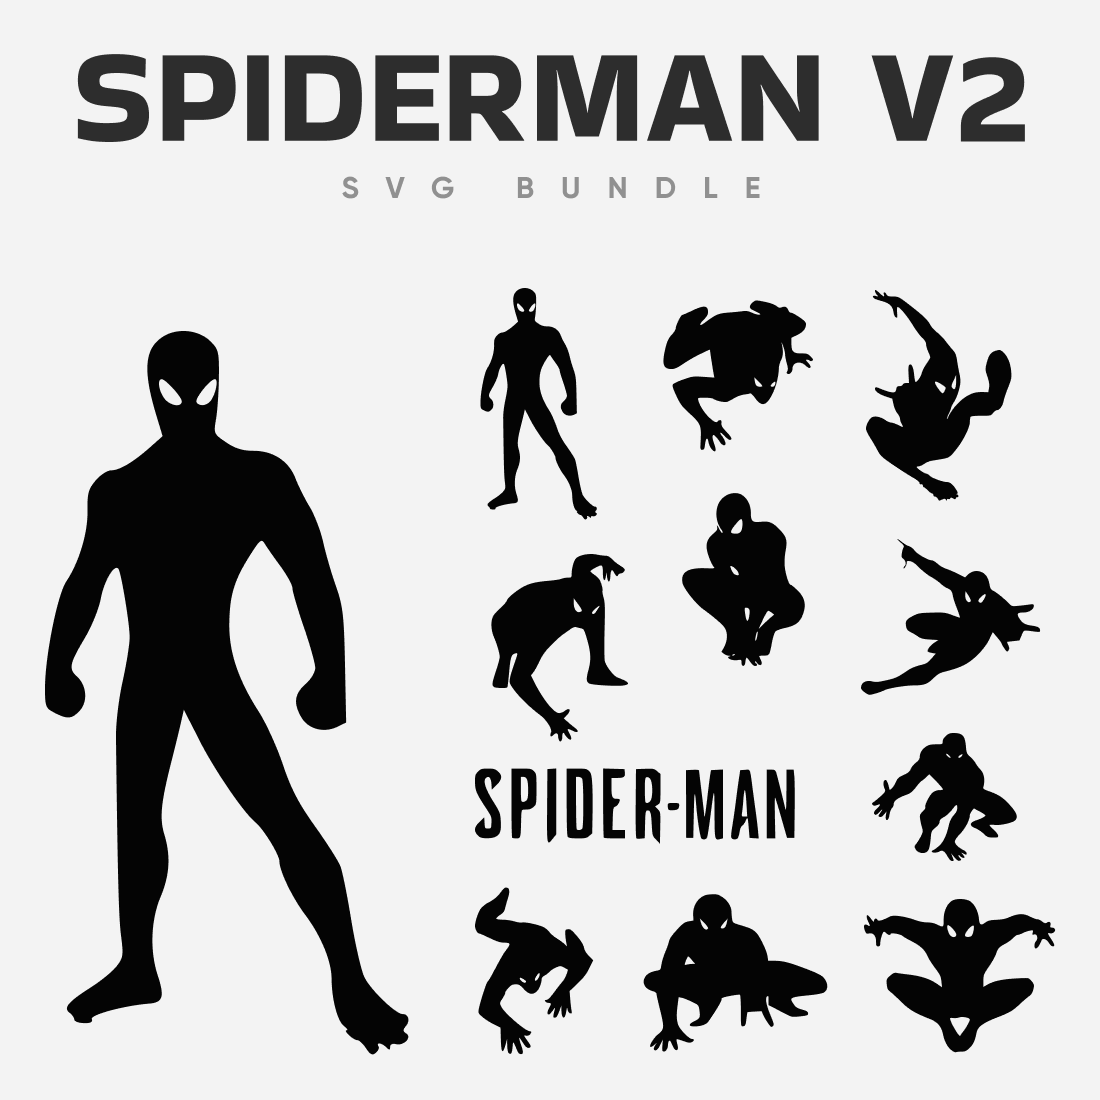 01. spiderman v2 svg bundle 1100 x 1100